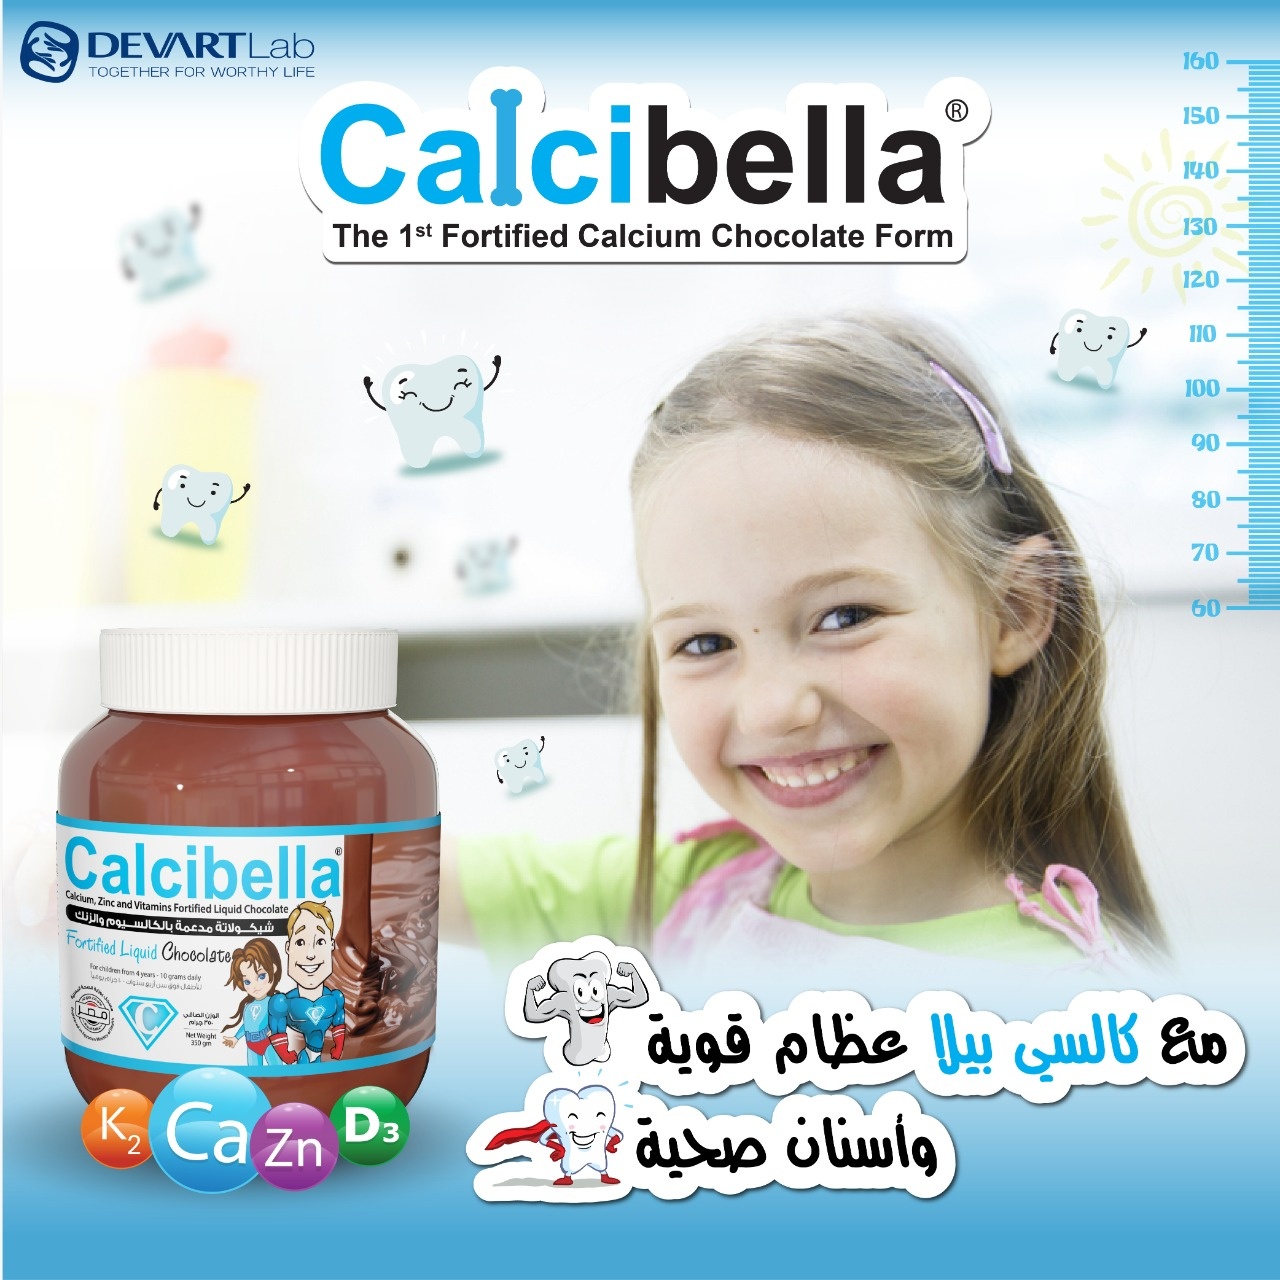 Calcibella